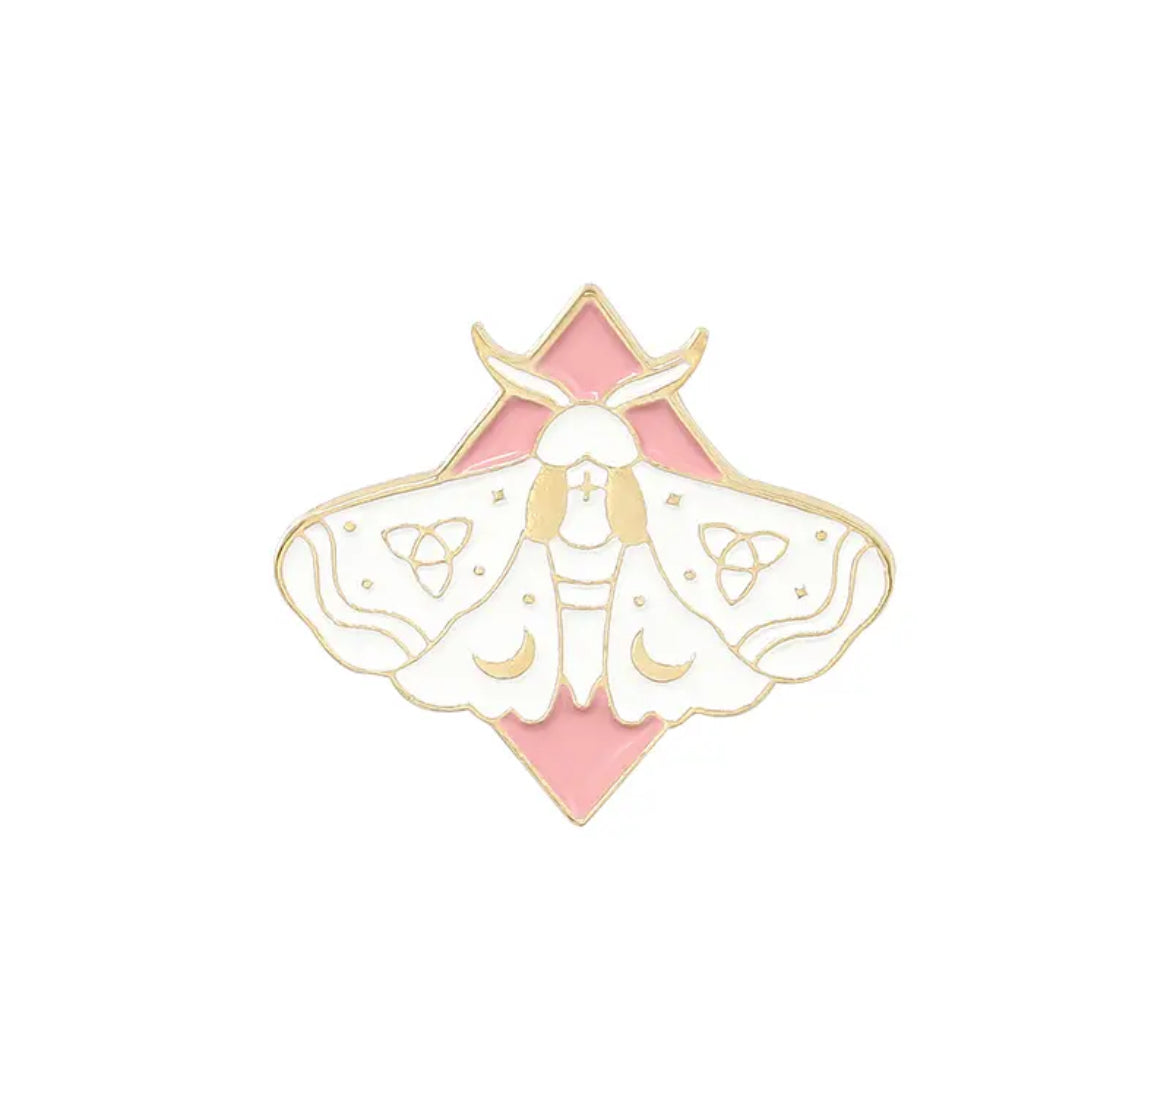 Luna Moths Brooch Pin Gold